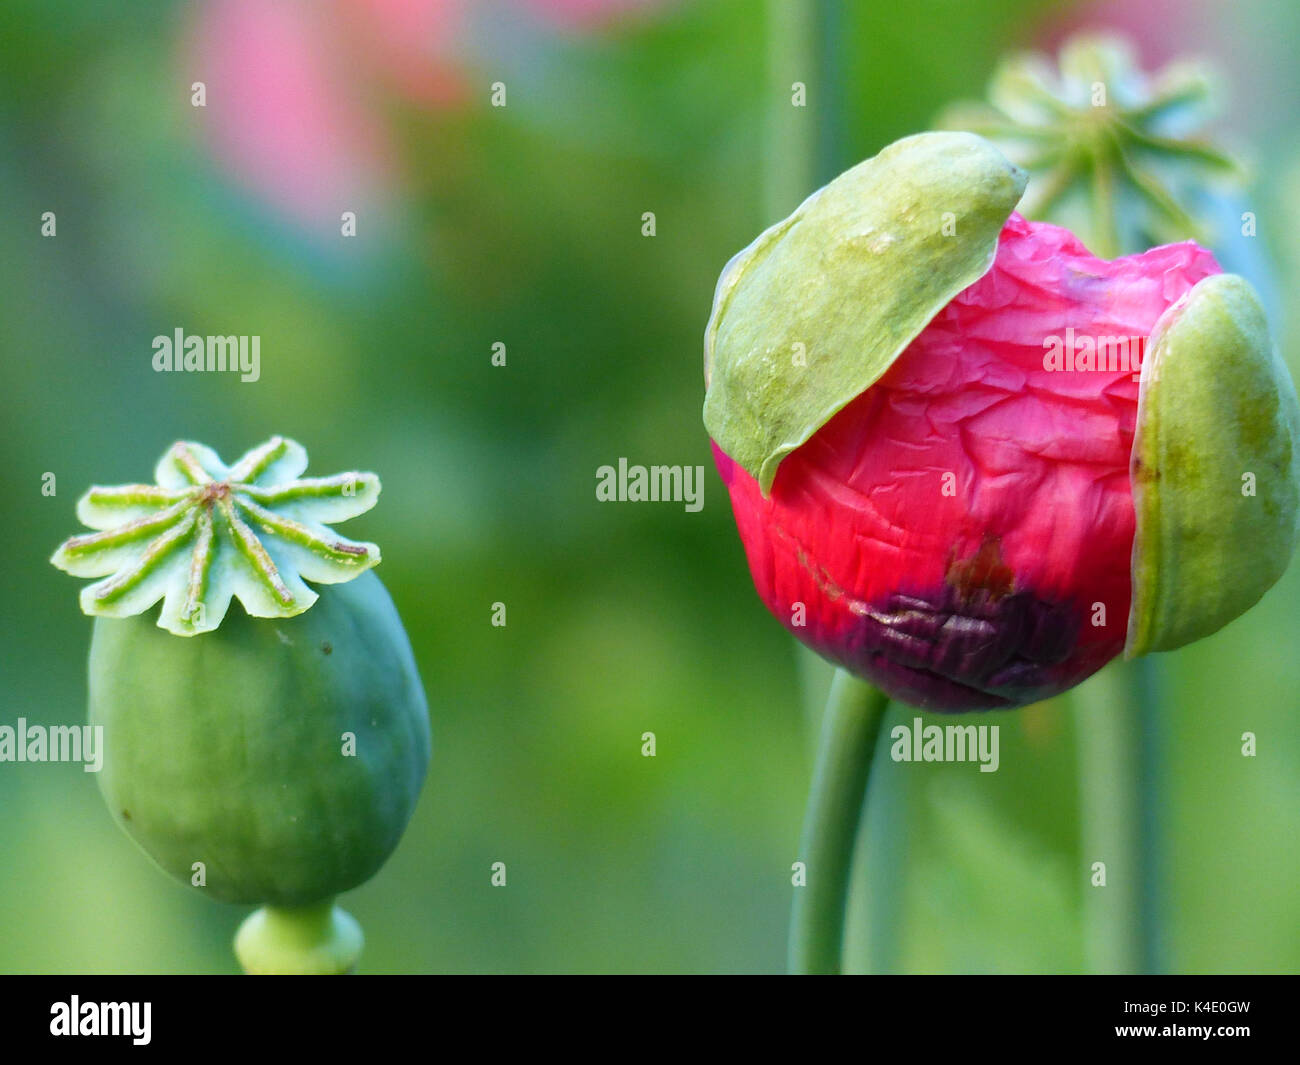 Poppy Capsules Of Withered Poppy, Opium Poppy, Ornamental Version, And Flourishing Poppy Flower Stock Photo